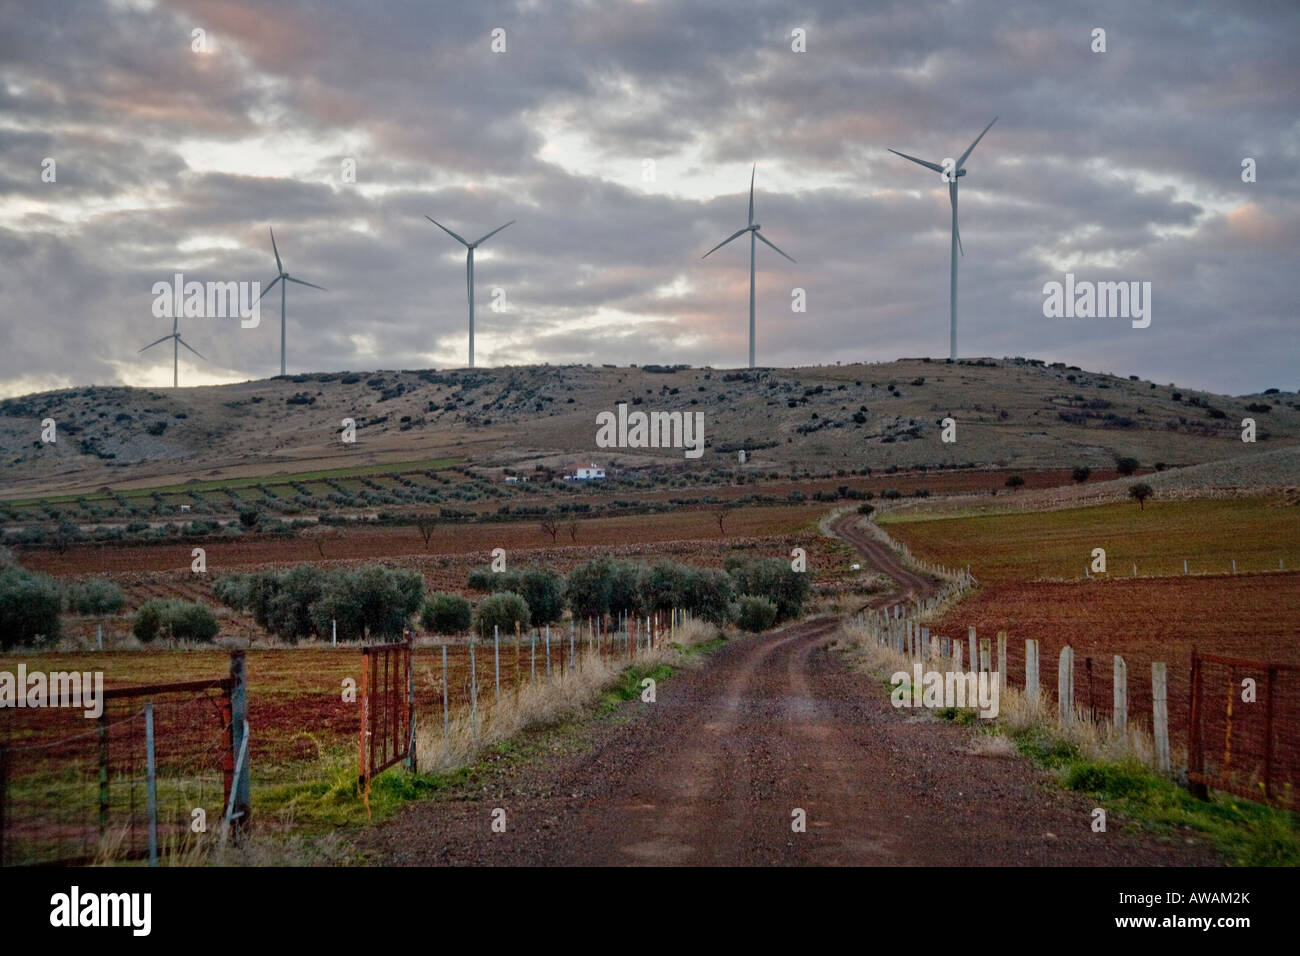 Les générateurs électriques d'énergie éolienne contraste avec une ancienne route de campagne dans le centre de l'Espagne Banque D'Images